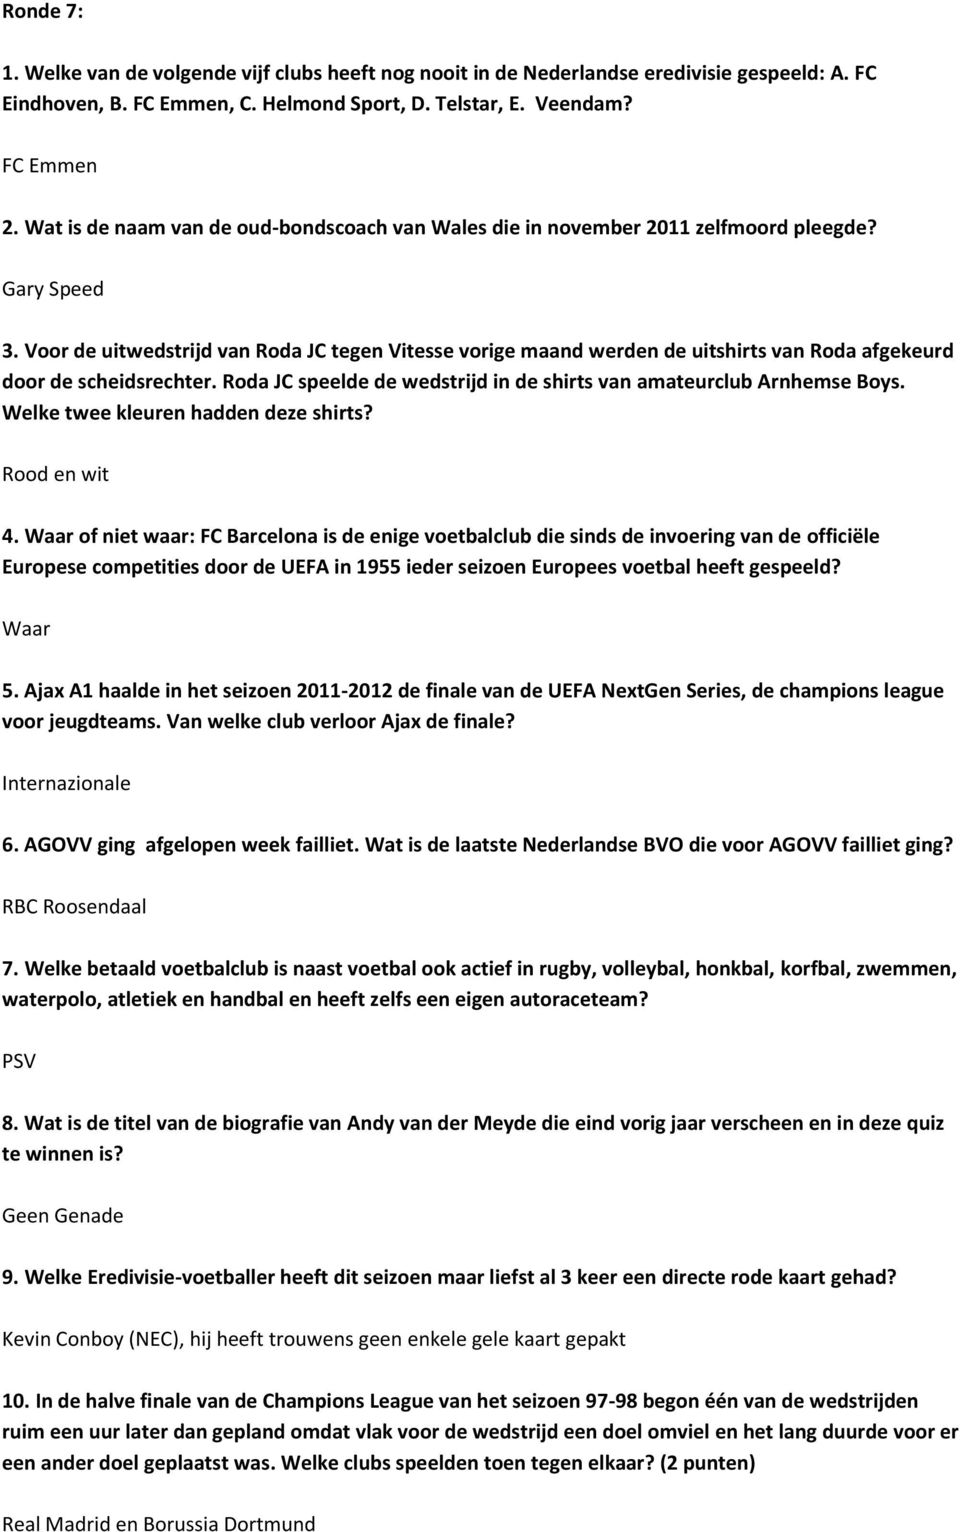 Voor de uitwedstrijd van Roda JC tegen Vitesse vorige maand werden de uitshirts van Roda afgekeurd door de scheidsrechter. Roda JC speelde de wedstrijd in de shirts van amateurclub Arnhemse Boys.